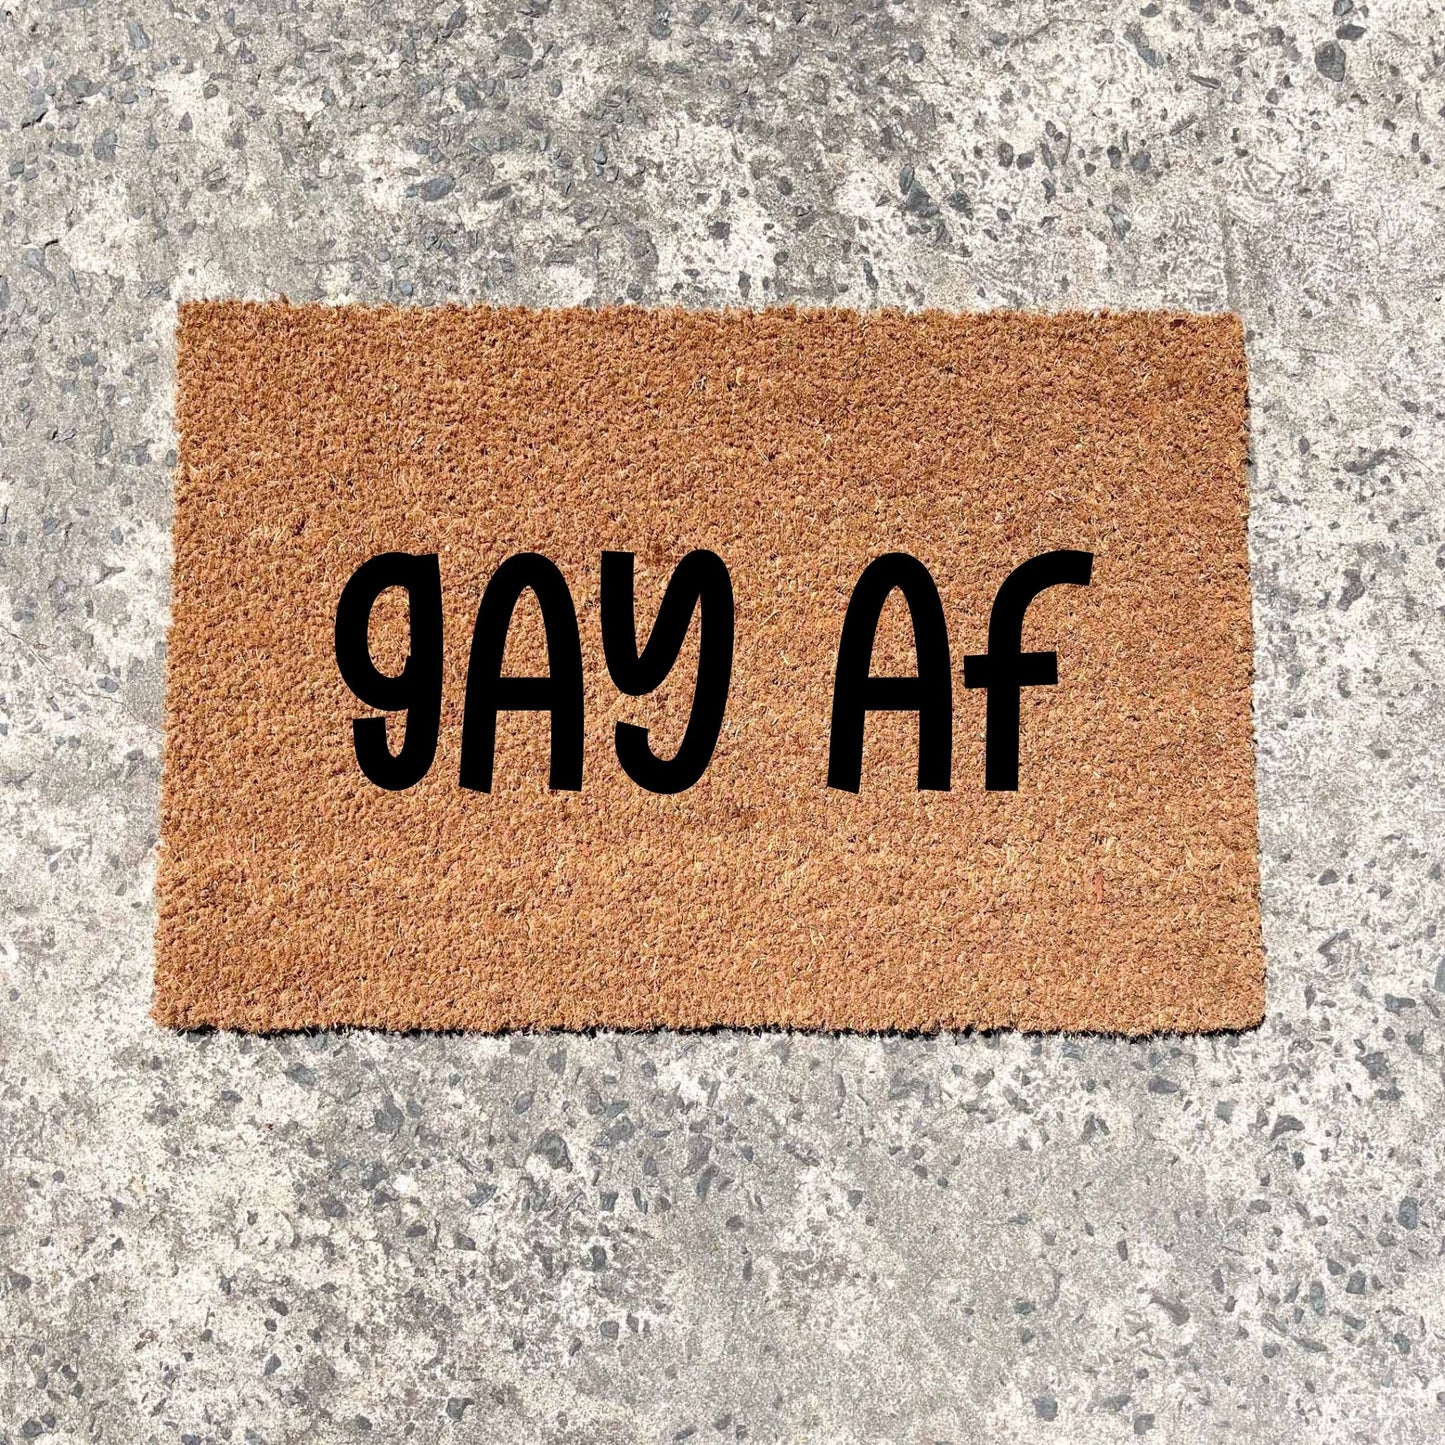 Gay AF doormat, unique doormat, custom doormat, personalised doormat